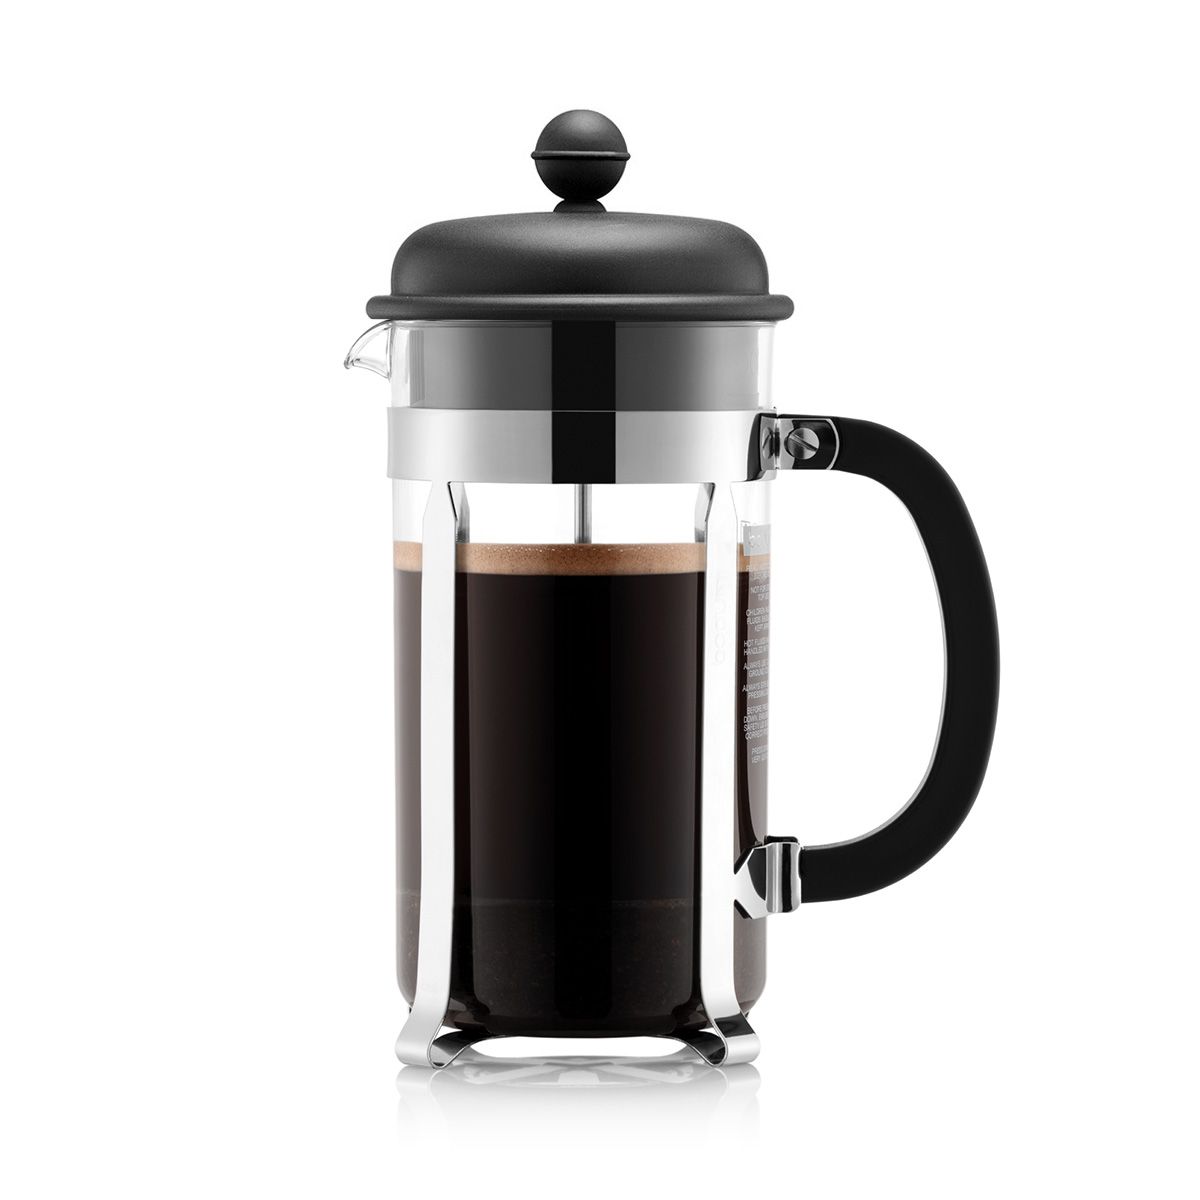 Bodum Caffettiera kaffebryggare svart, 8 koppar